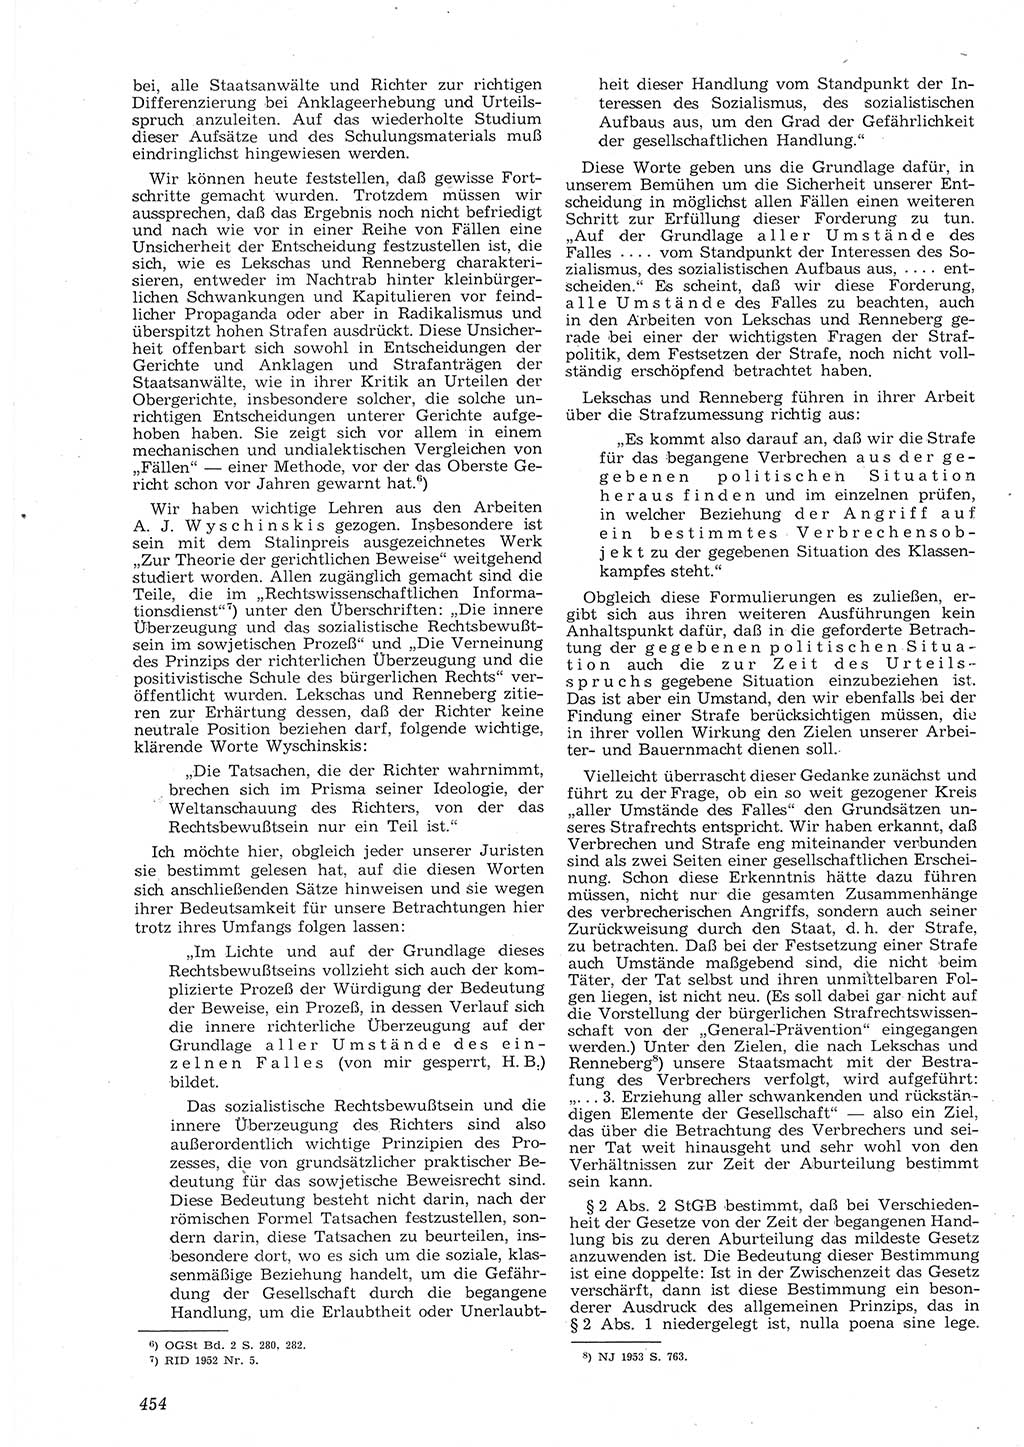 Neue Justiz (NJ), Zeitschrift für Recht und Rechtswissenschaft [Deutsche Demokratische Republik (DDR)], 8. Jahrgang 1954, Seite 454 (NJ DDR 1954, S. 454)